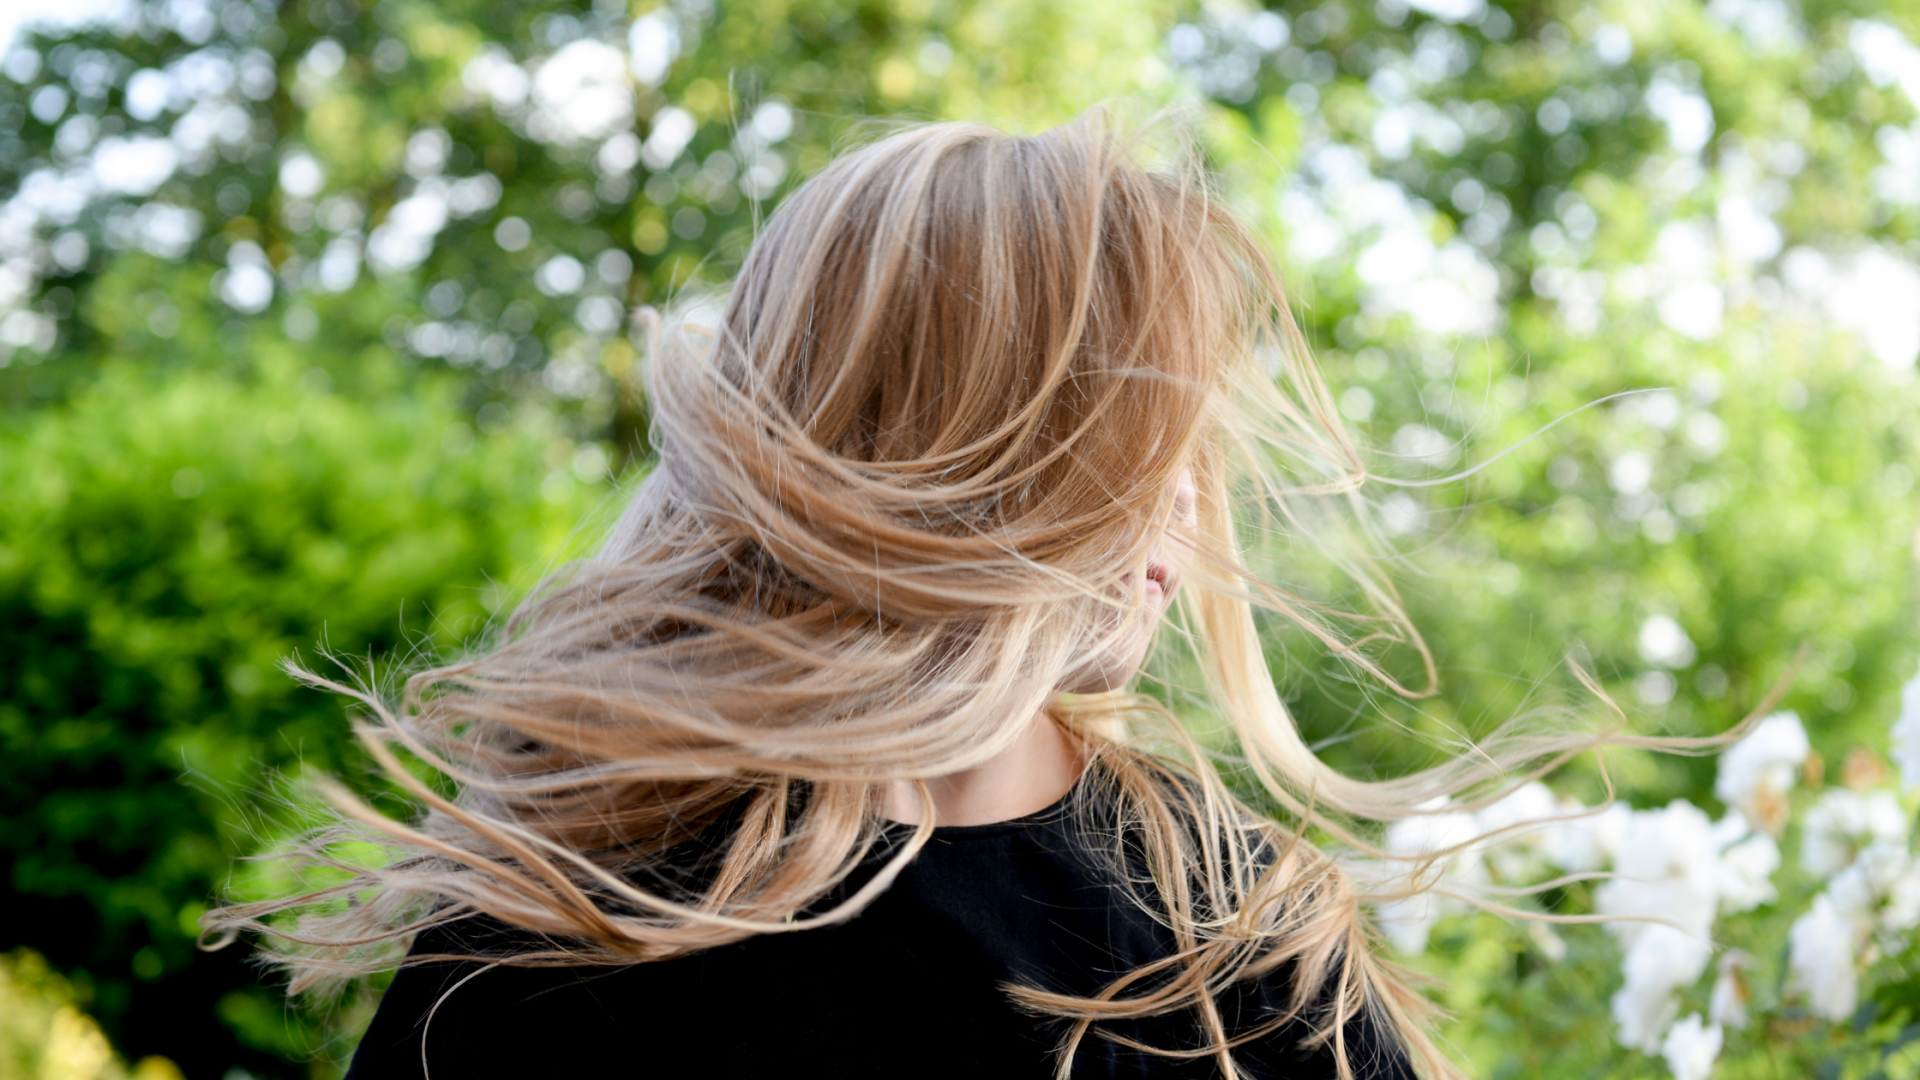 Nutricosmética para prevenir la caída del cabello en otoño